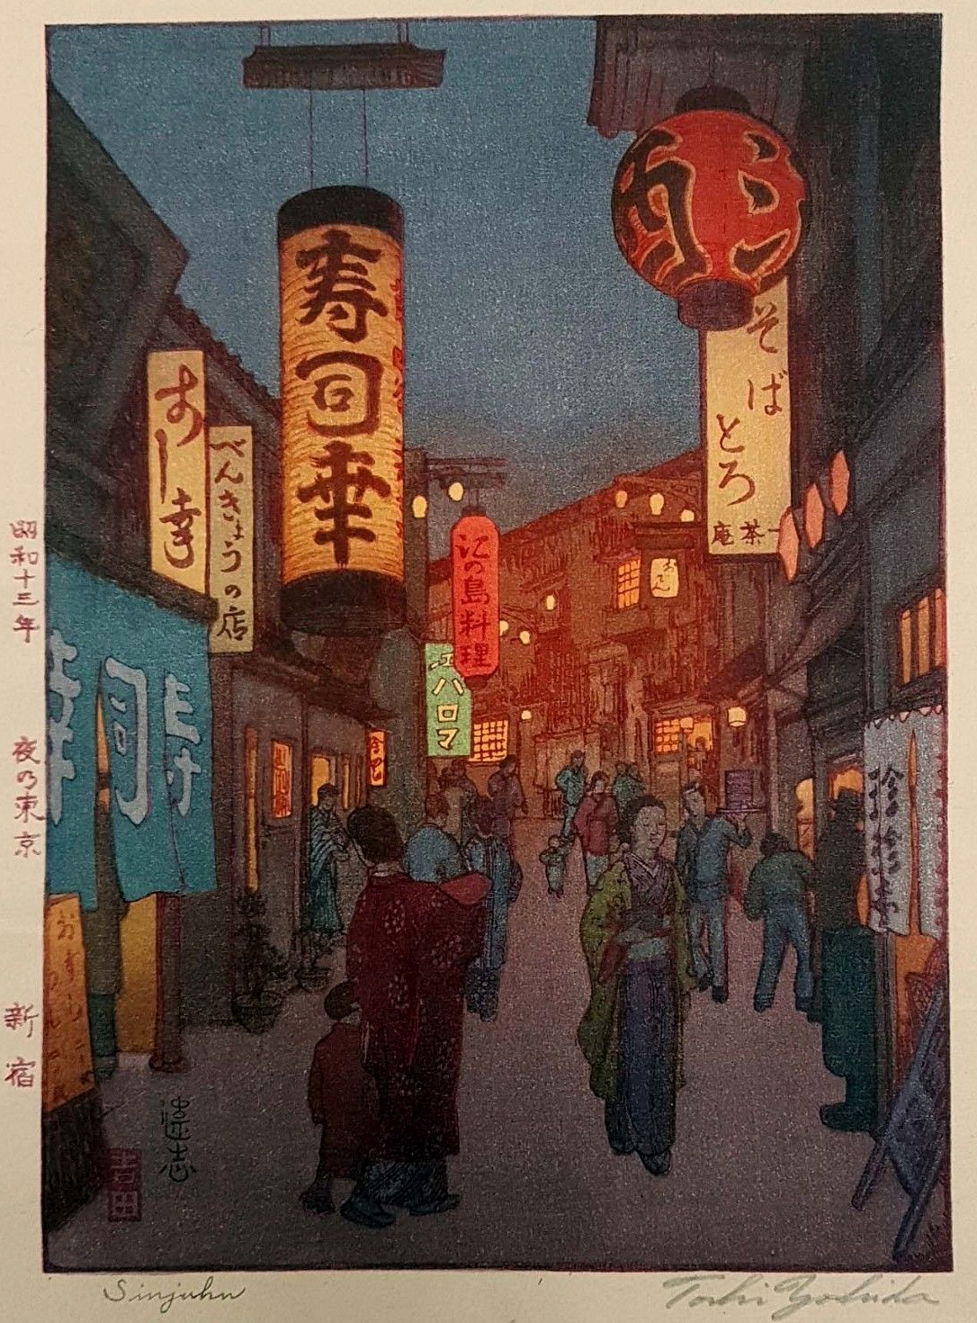 Toshi Yoshida “Sinjuku [Shinjuku]” 1938 woodblock print